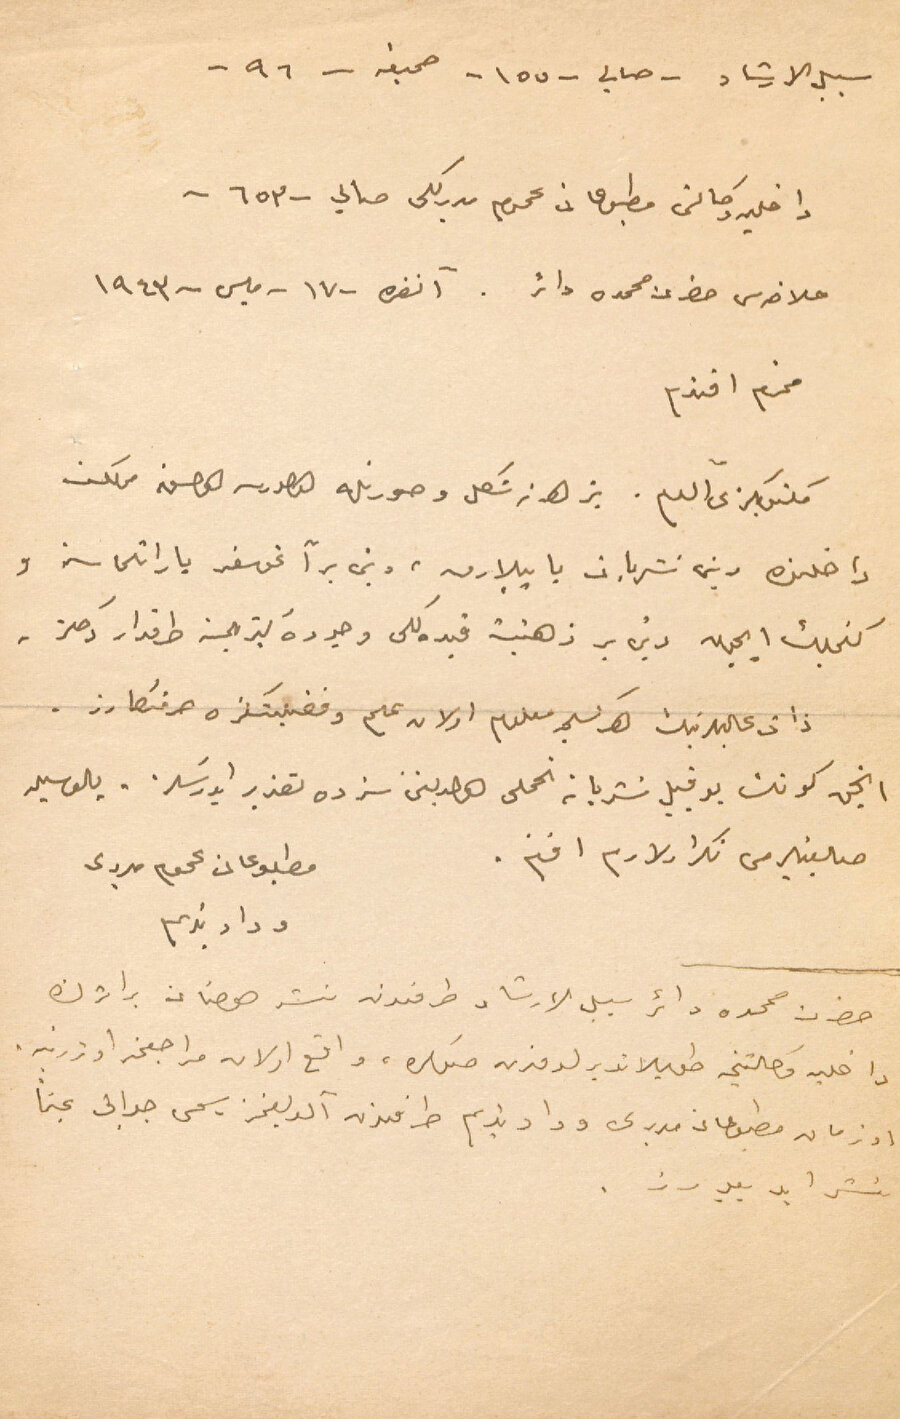 Vedat Nedim Tör - Resmi yazının Osmanlı harfleri ile müsveddesi